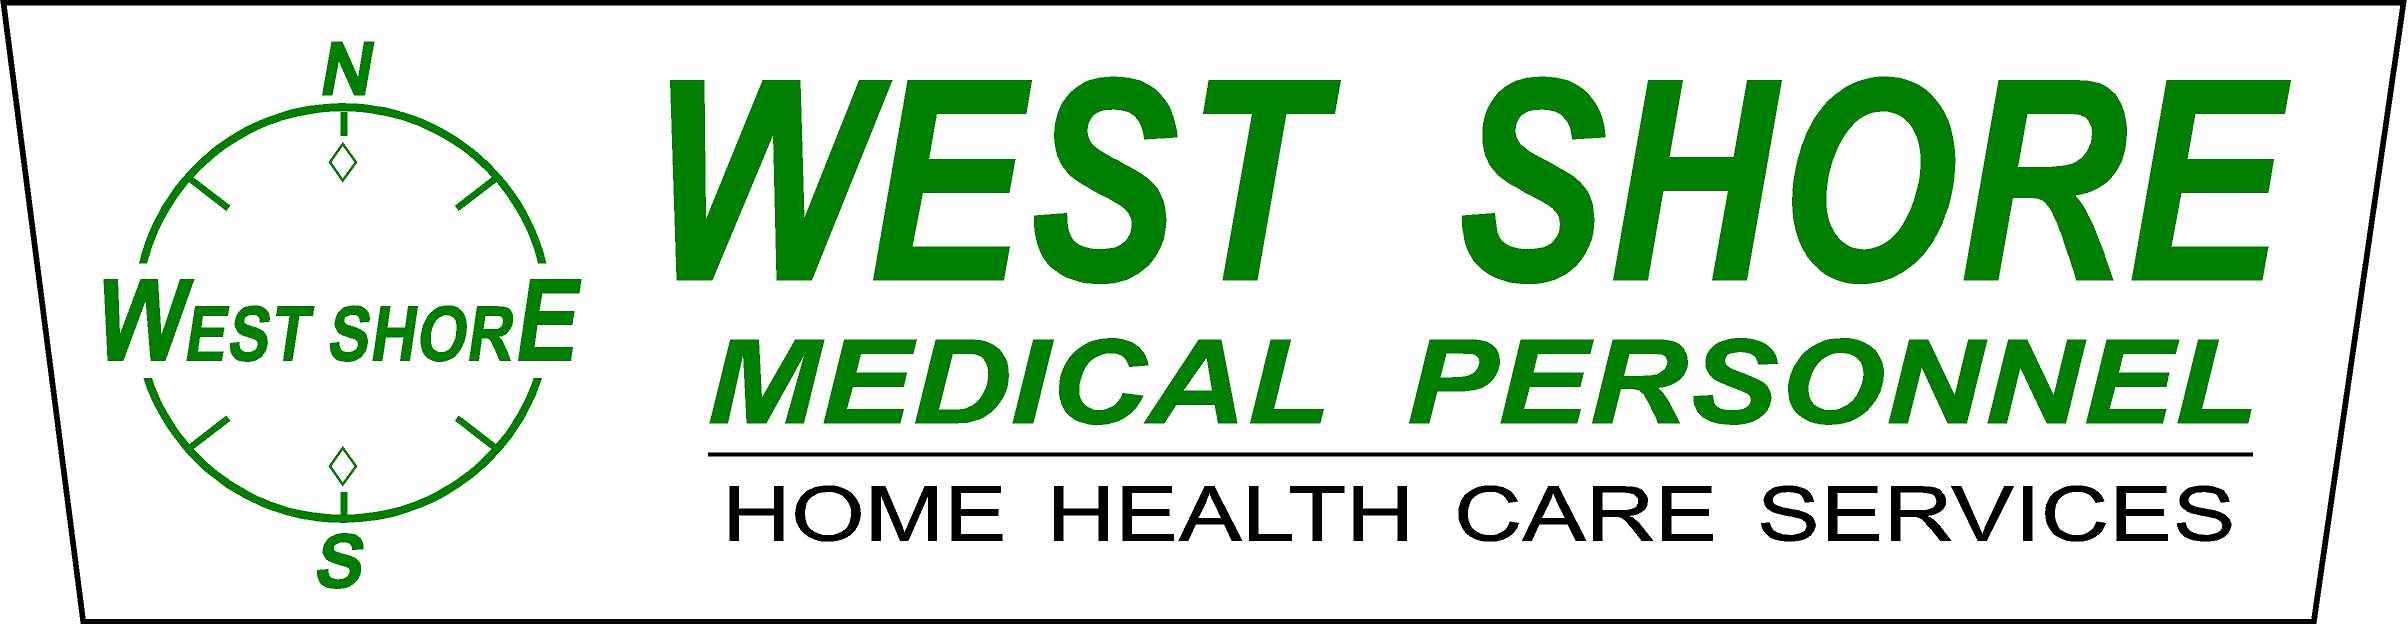 West Shore Medical Personnel Services, Inc.